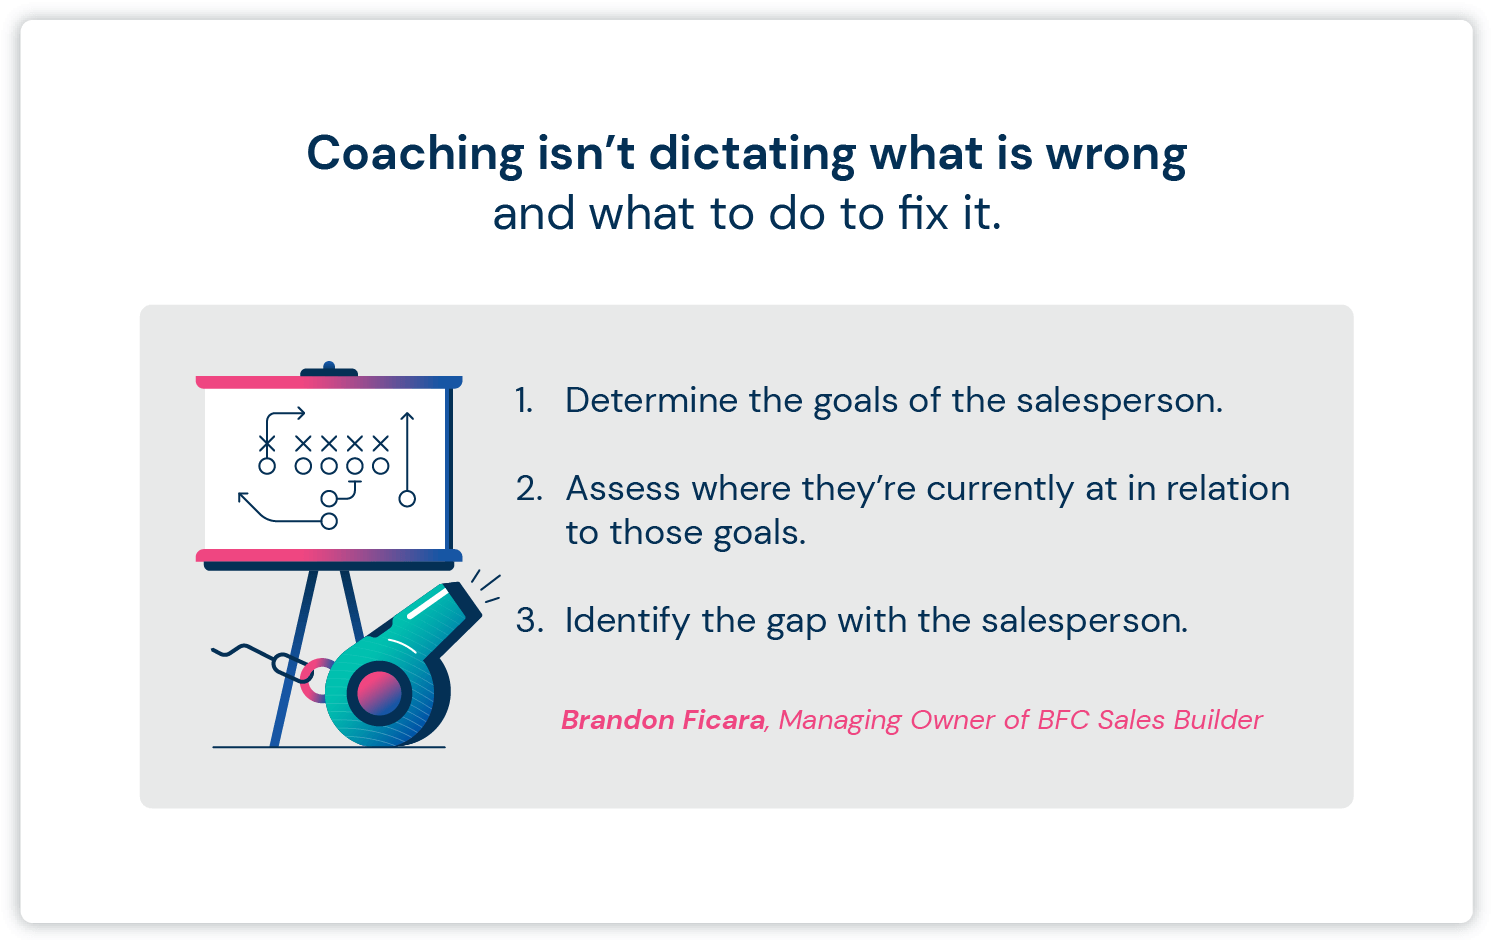 Una imagen de un libro de jugadas deportivas junto al texto sobre cómo el coaching de ventas no se trata solo de dictar lo que está mal.